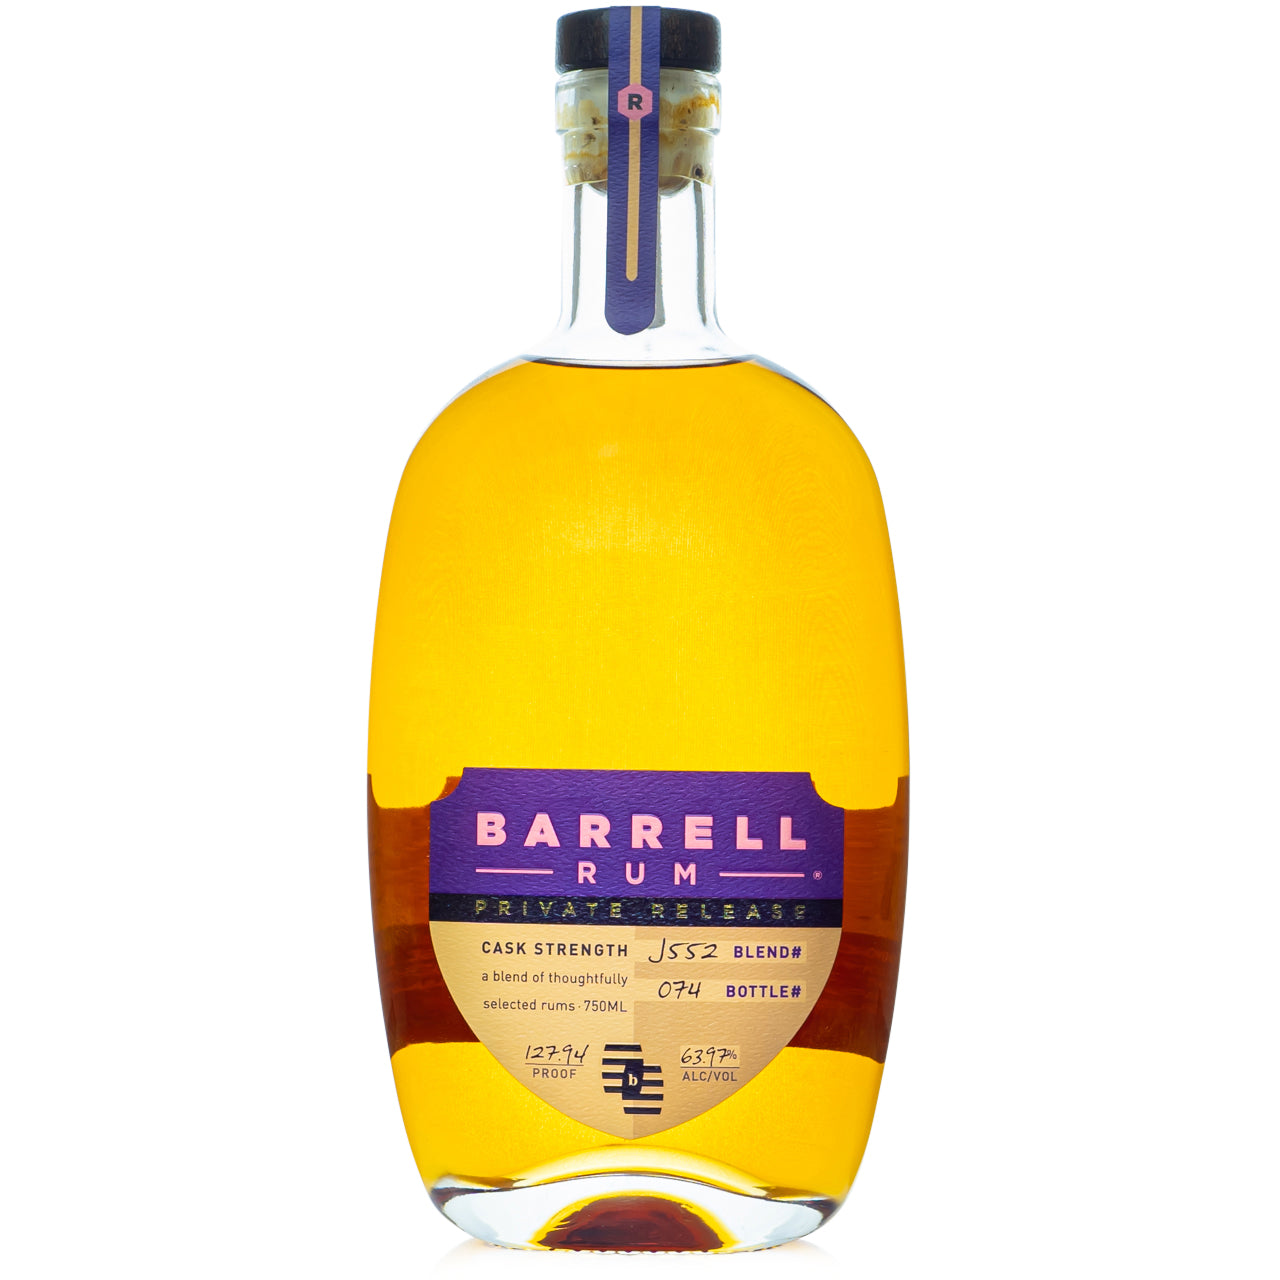 Barrell Private Release J552 Single Cask Rum